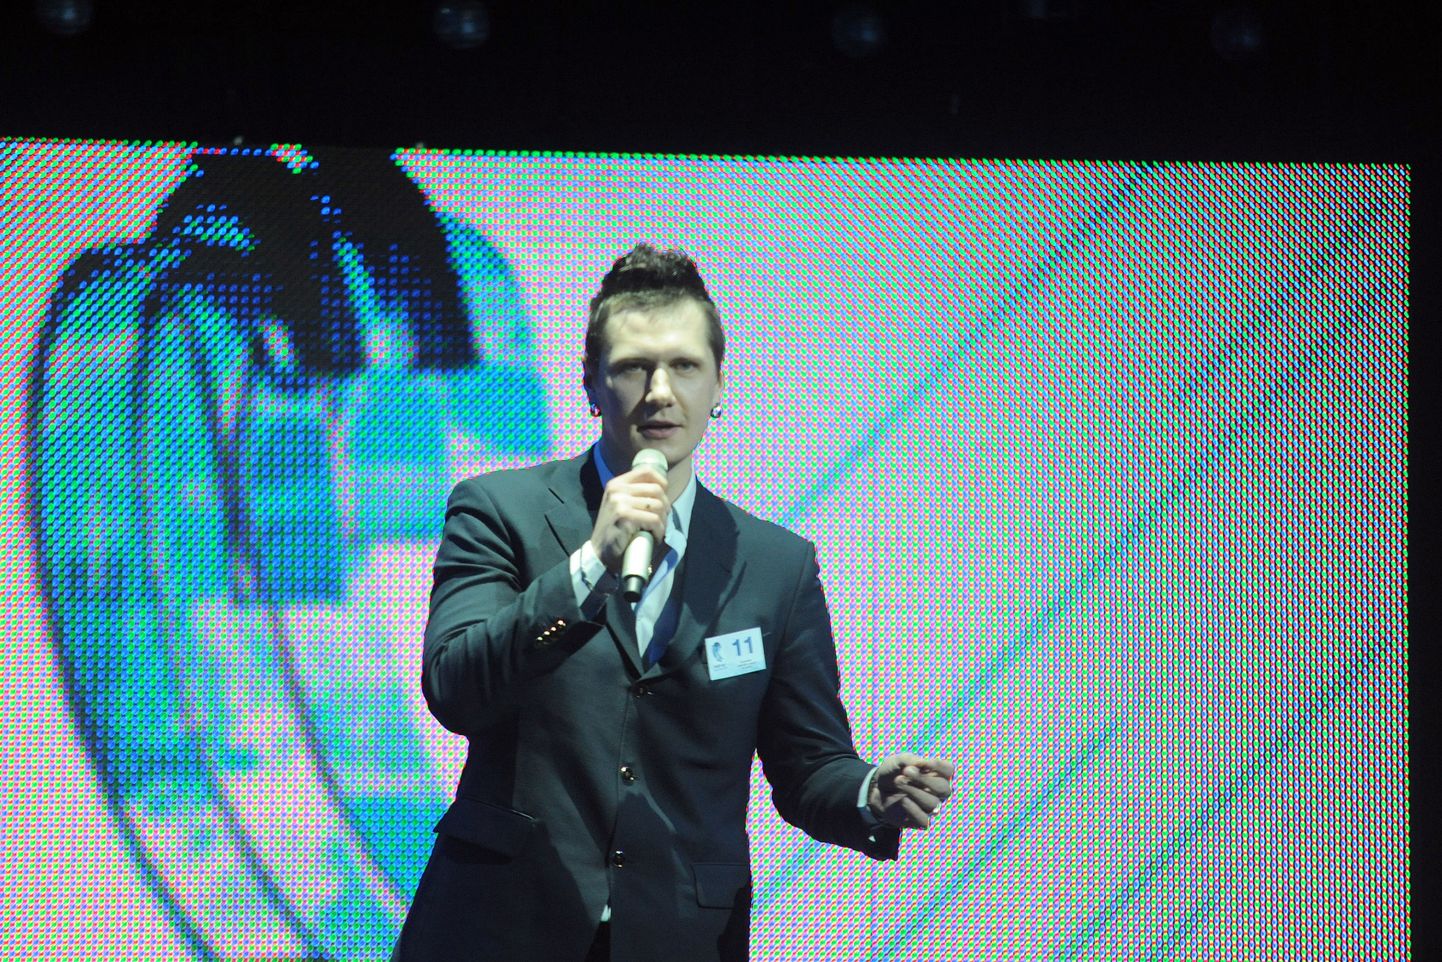 Dziedātājs Johnny (Jānis Lemezis) piedalās starptautiskajā jauno izpildītāju konkursa "Jaunais vilnis" atlases kārtā. 2013. gads.